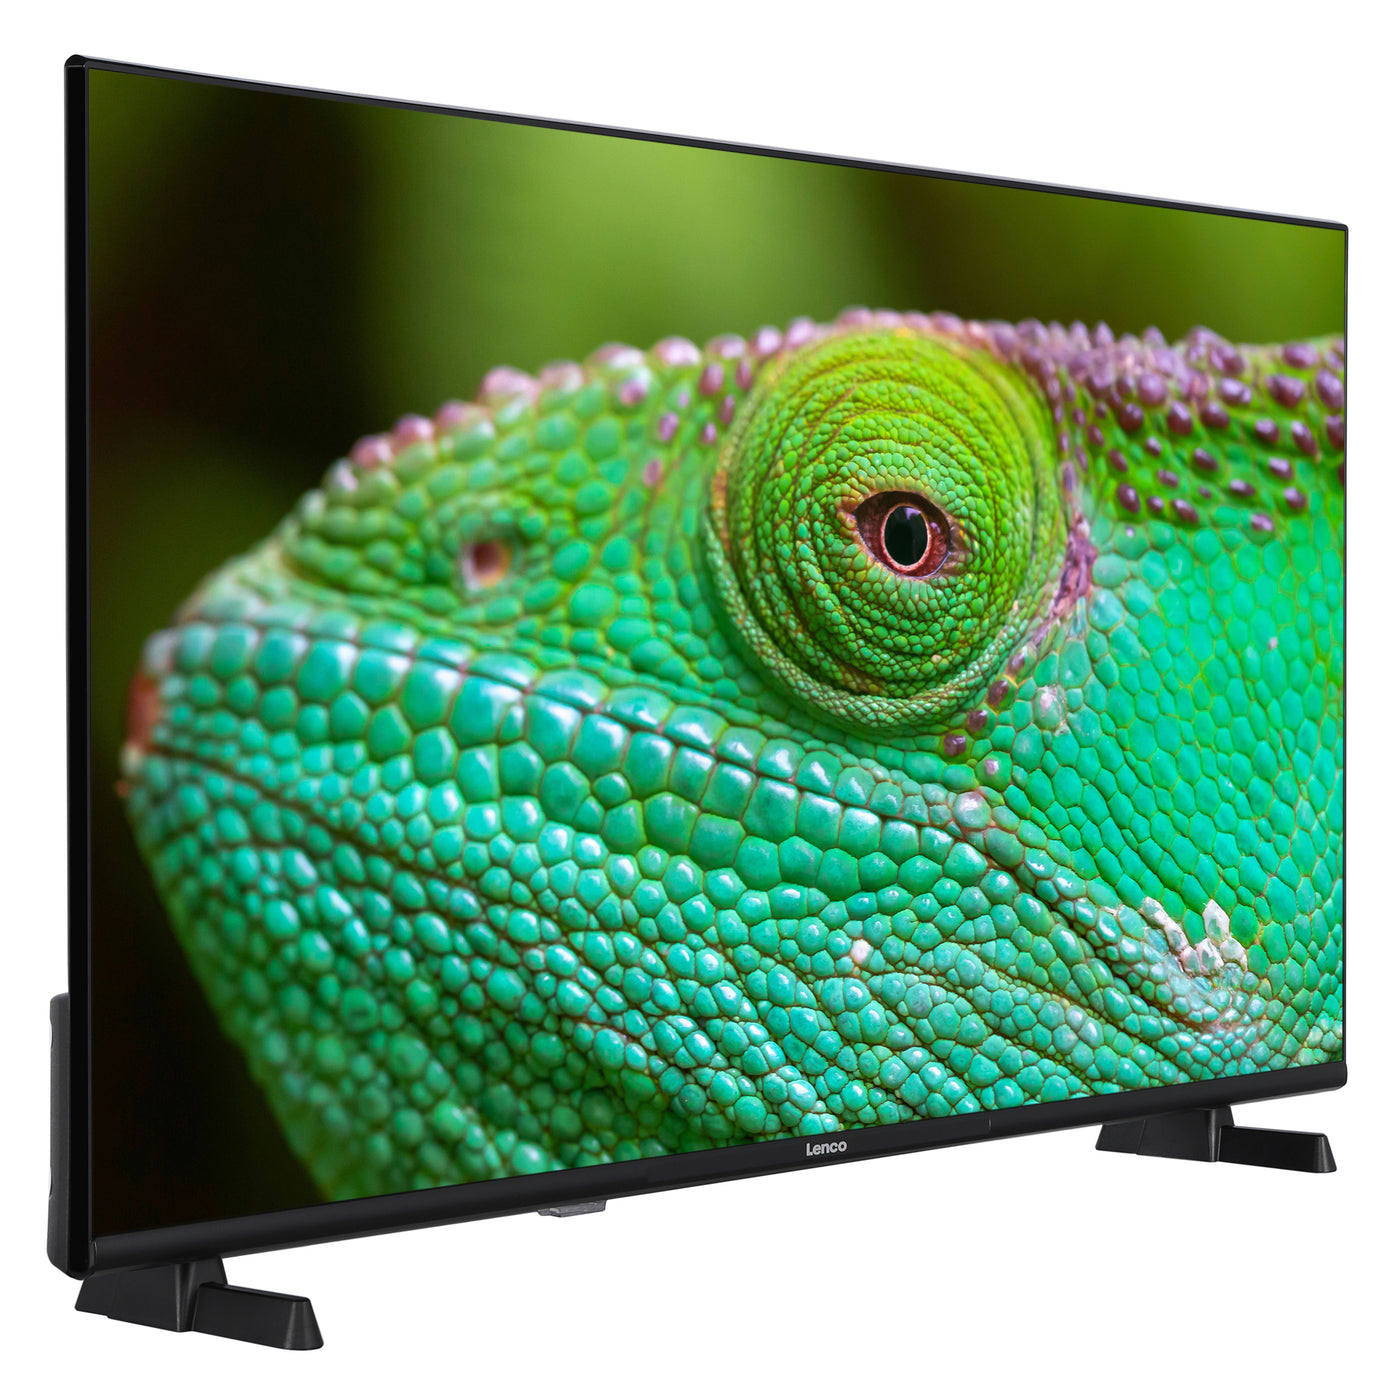 Lenco LED-4044BK - 40" Smart TV Android, Full HD, noir